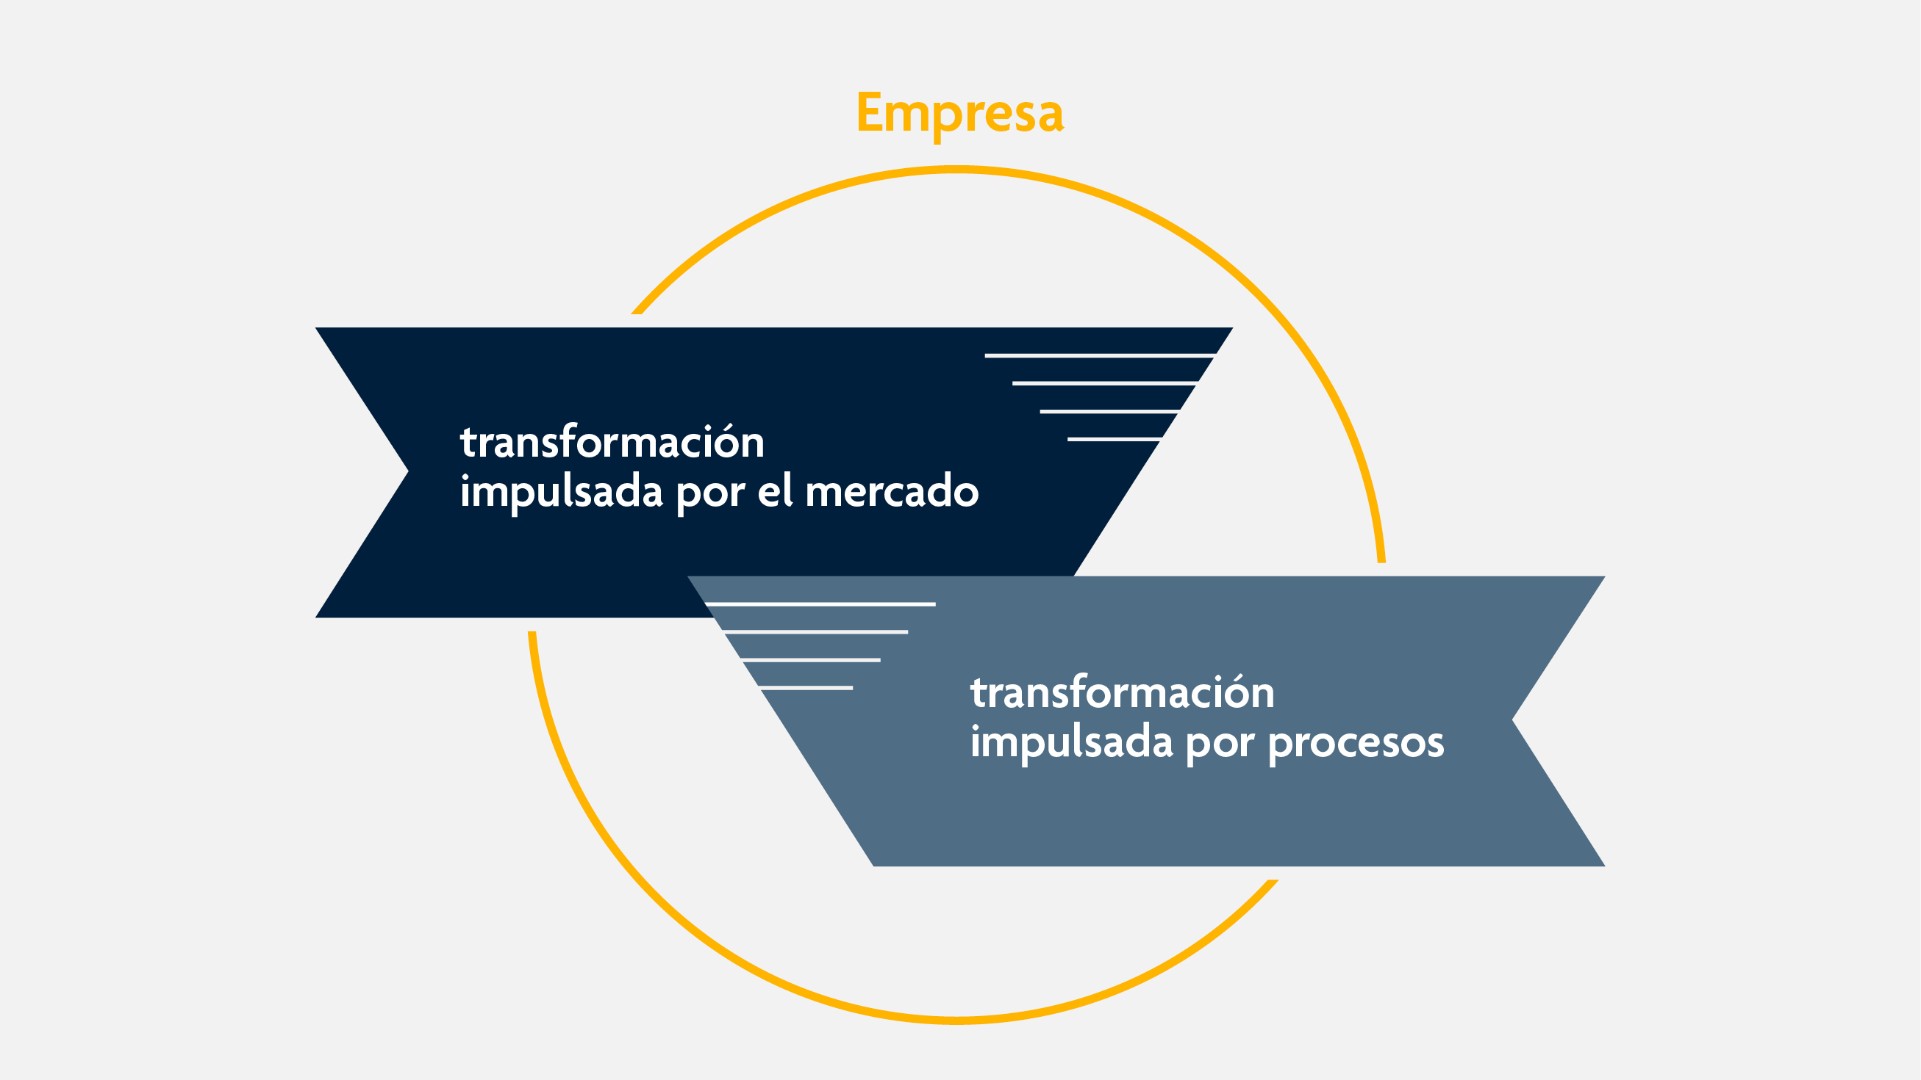 Un círculo muestra las dos posibles rutas de transformación: transformación impulsada por el mercado e impulsada por los procesos